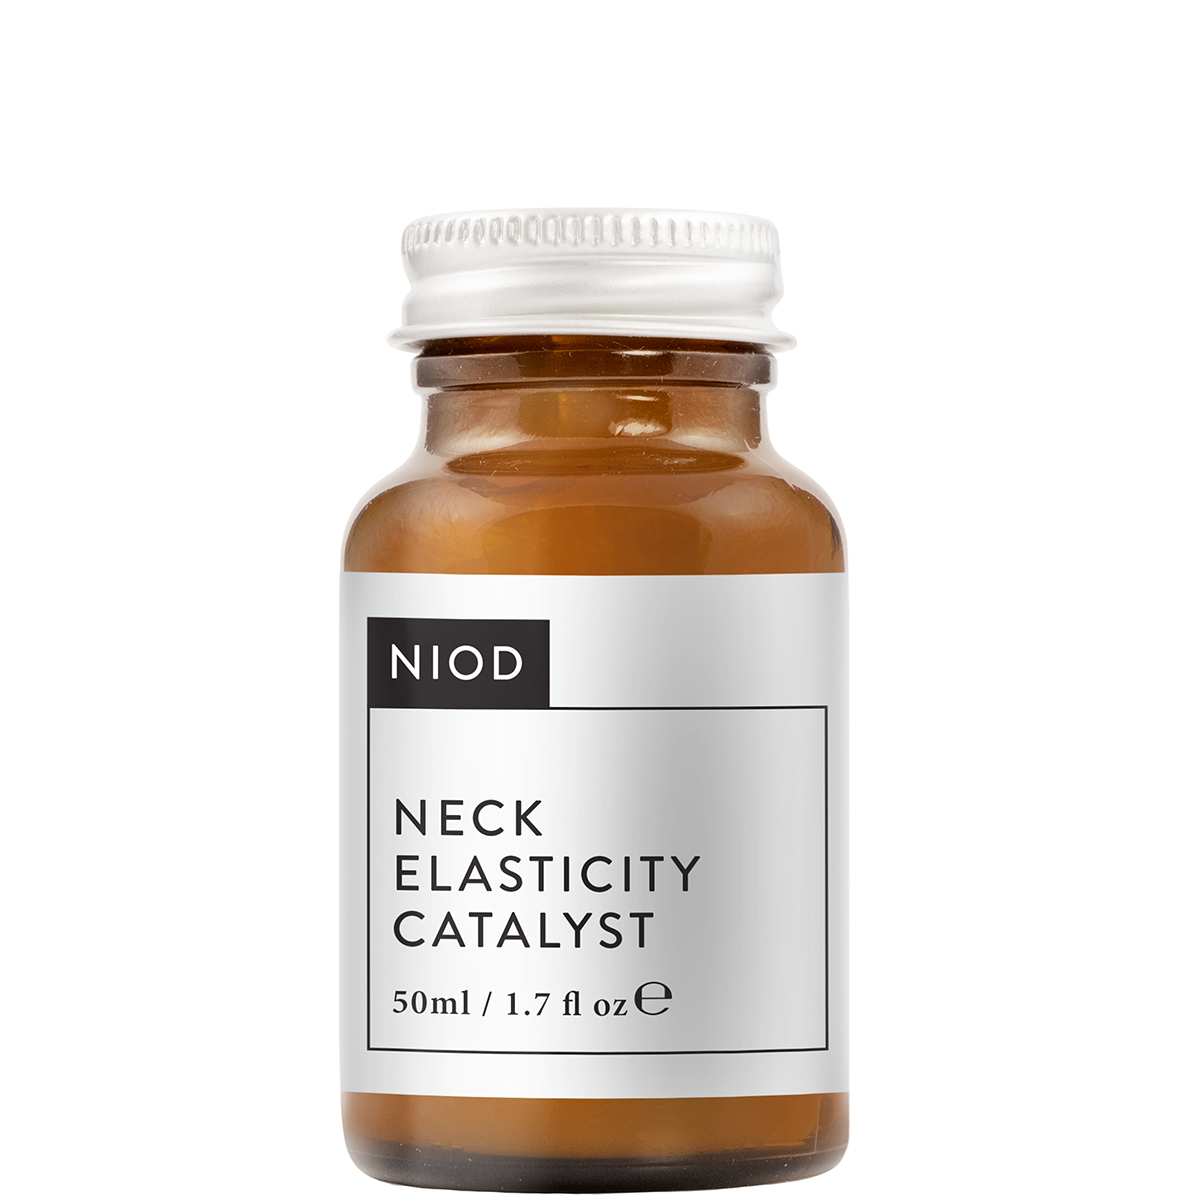 Niod Neck Elasticity Catalyst